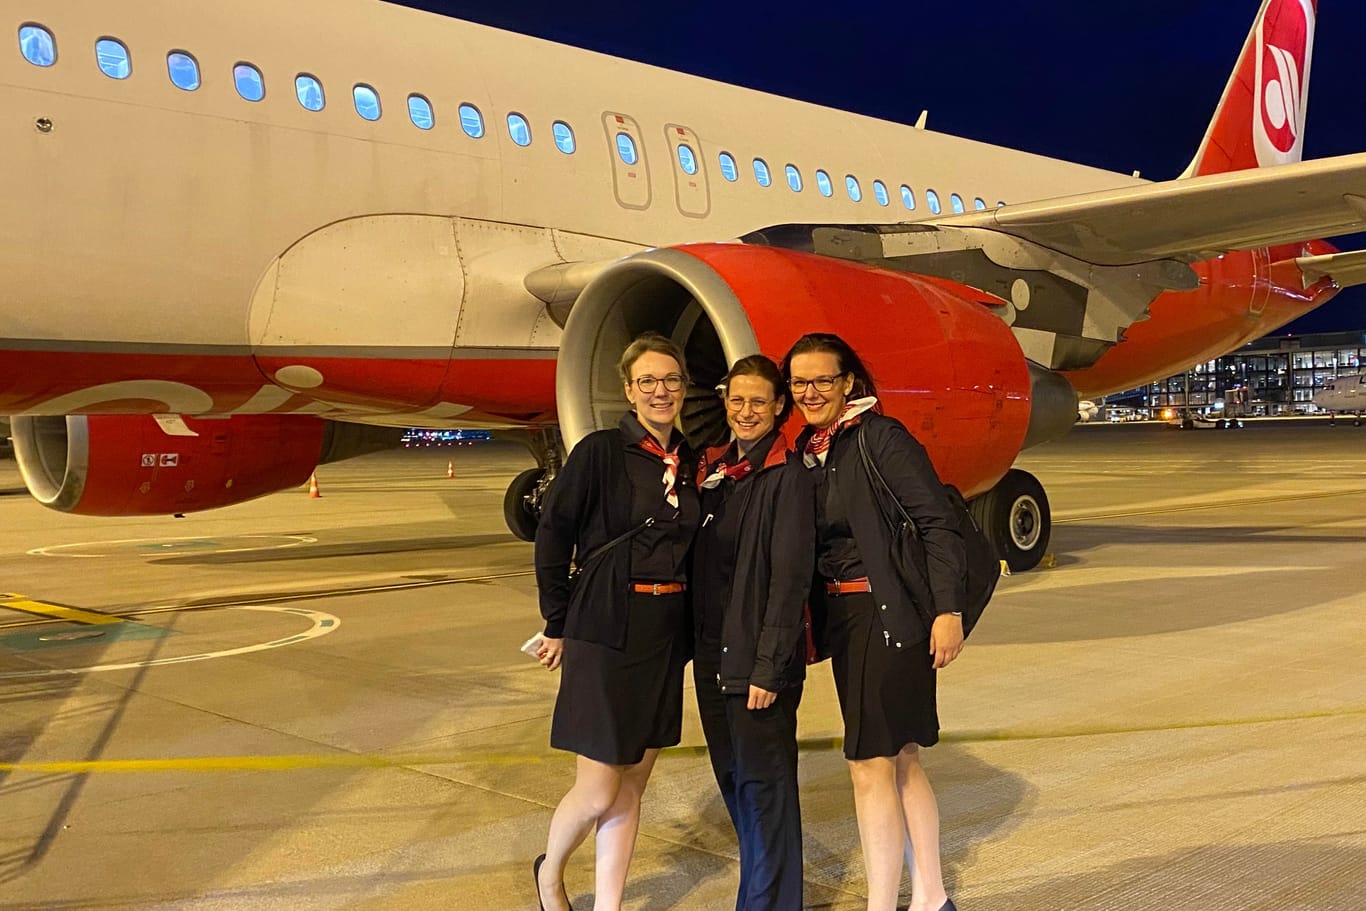 Evi, Bea und Anne stehen vor dem letzten noch existierenden Flugzeug mit Air-Berlin-Lackierung: Die ehemaligen Air-Berlin-Mitarbeiterinnen haben ihre Arbeit bei der Fluggesellschaft geliebt.